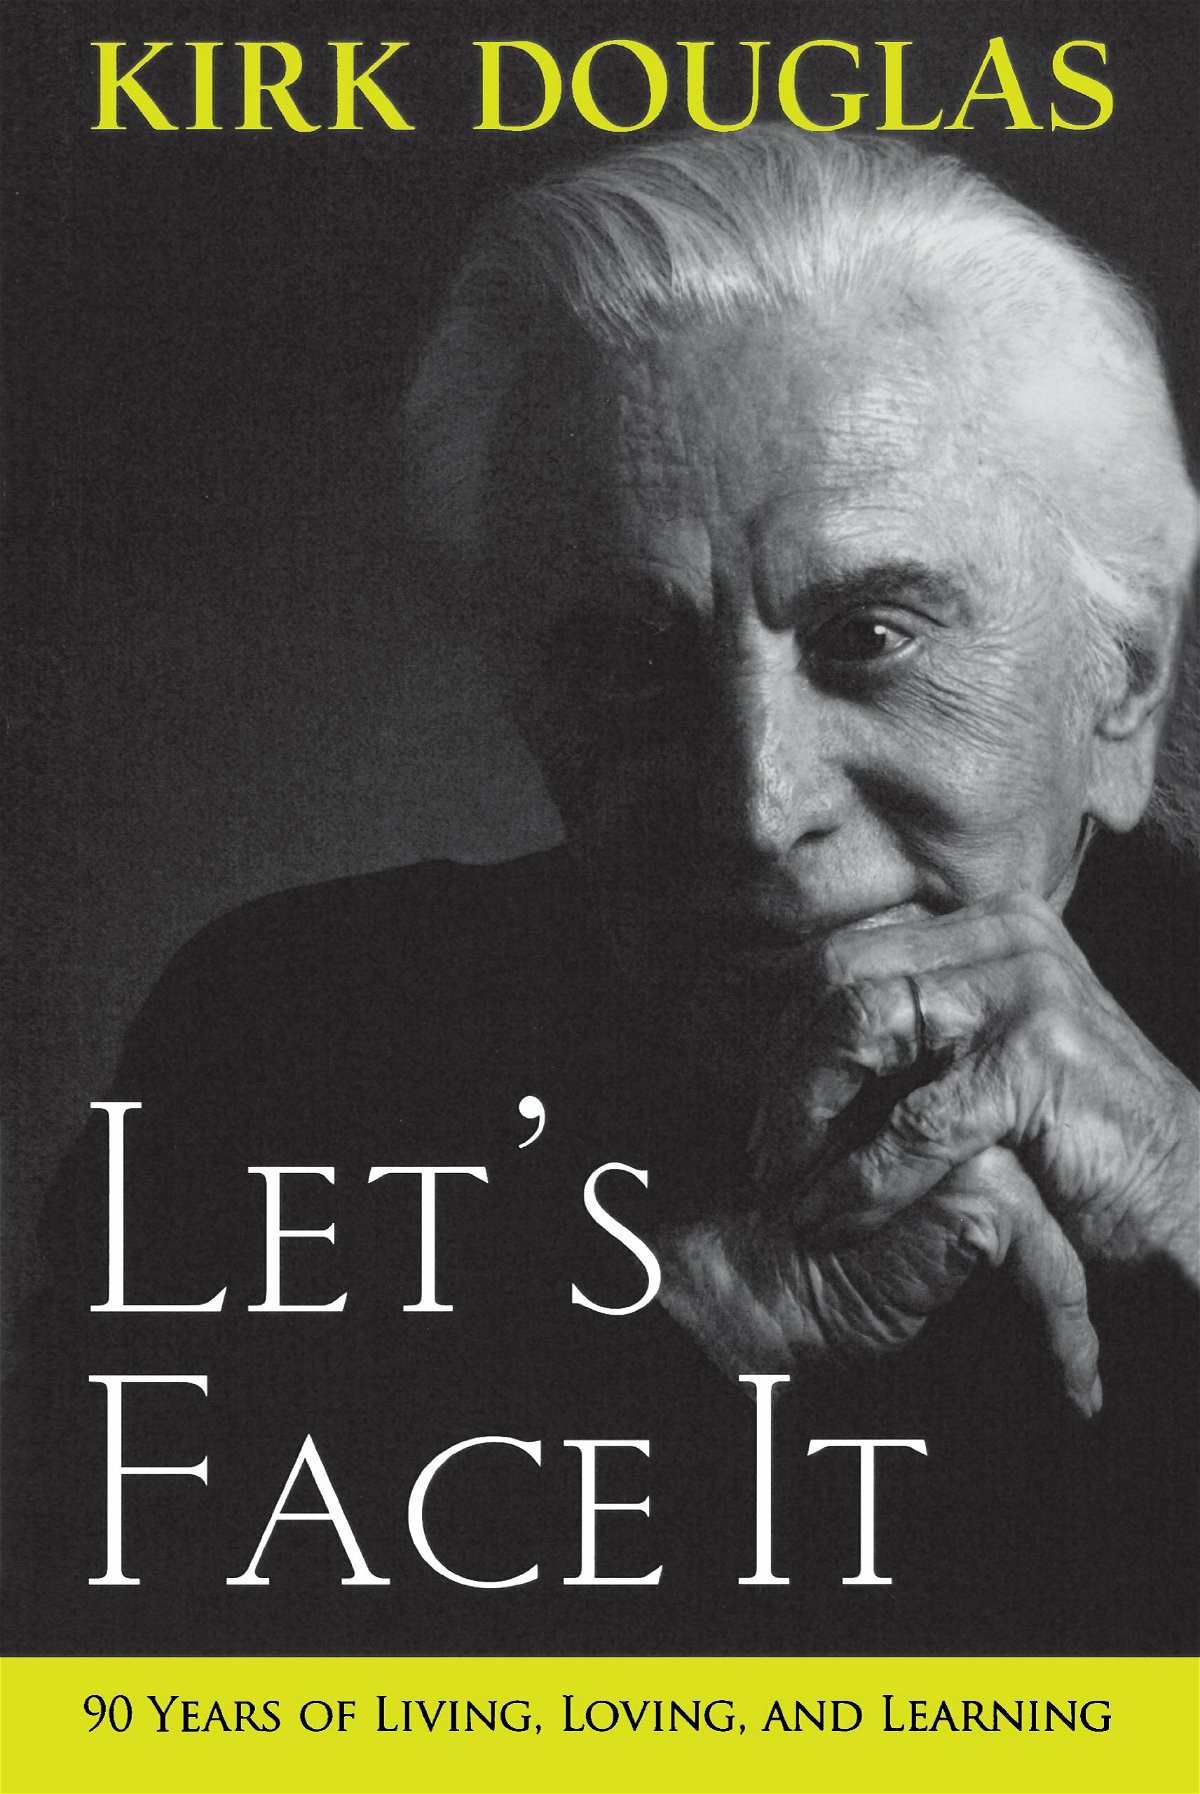 La cover del libro Let's Face It scritto da Kirk Douglas, che appare in copertina in una foto in bianco e nero